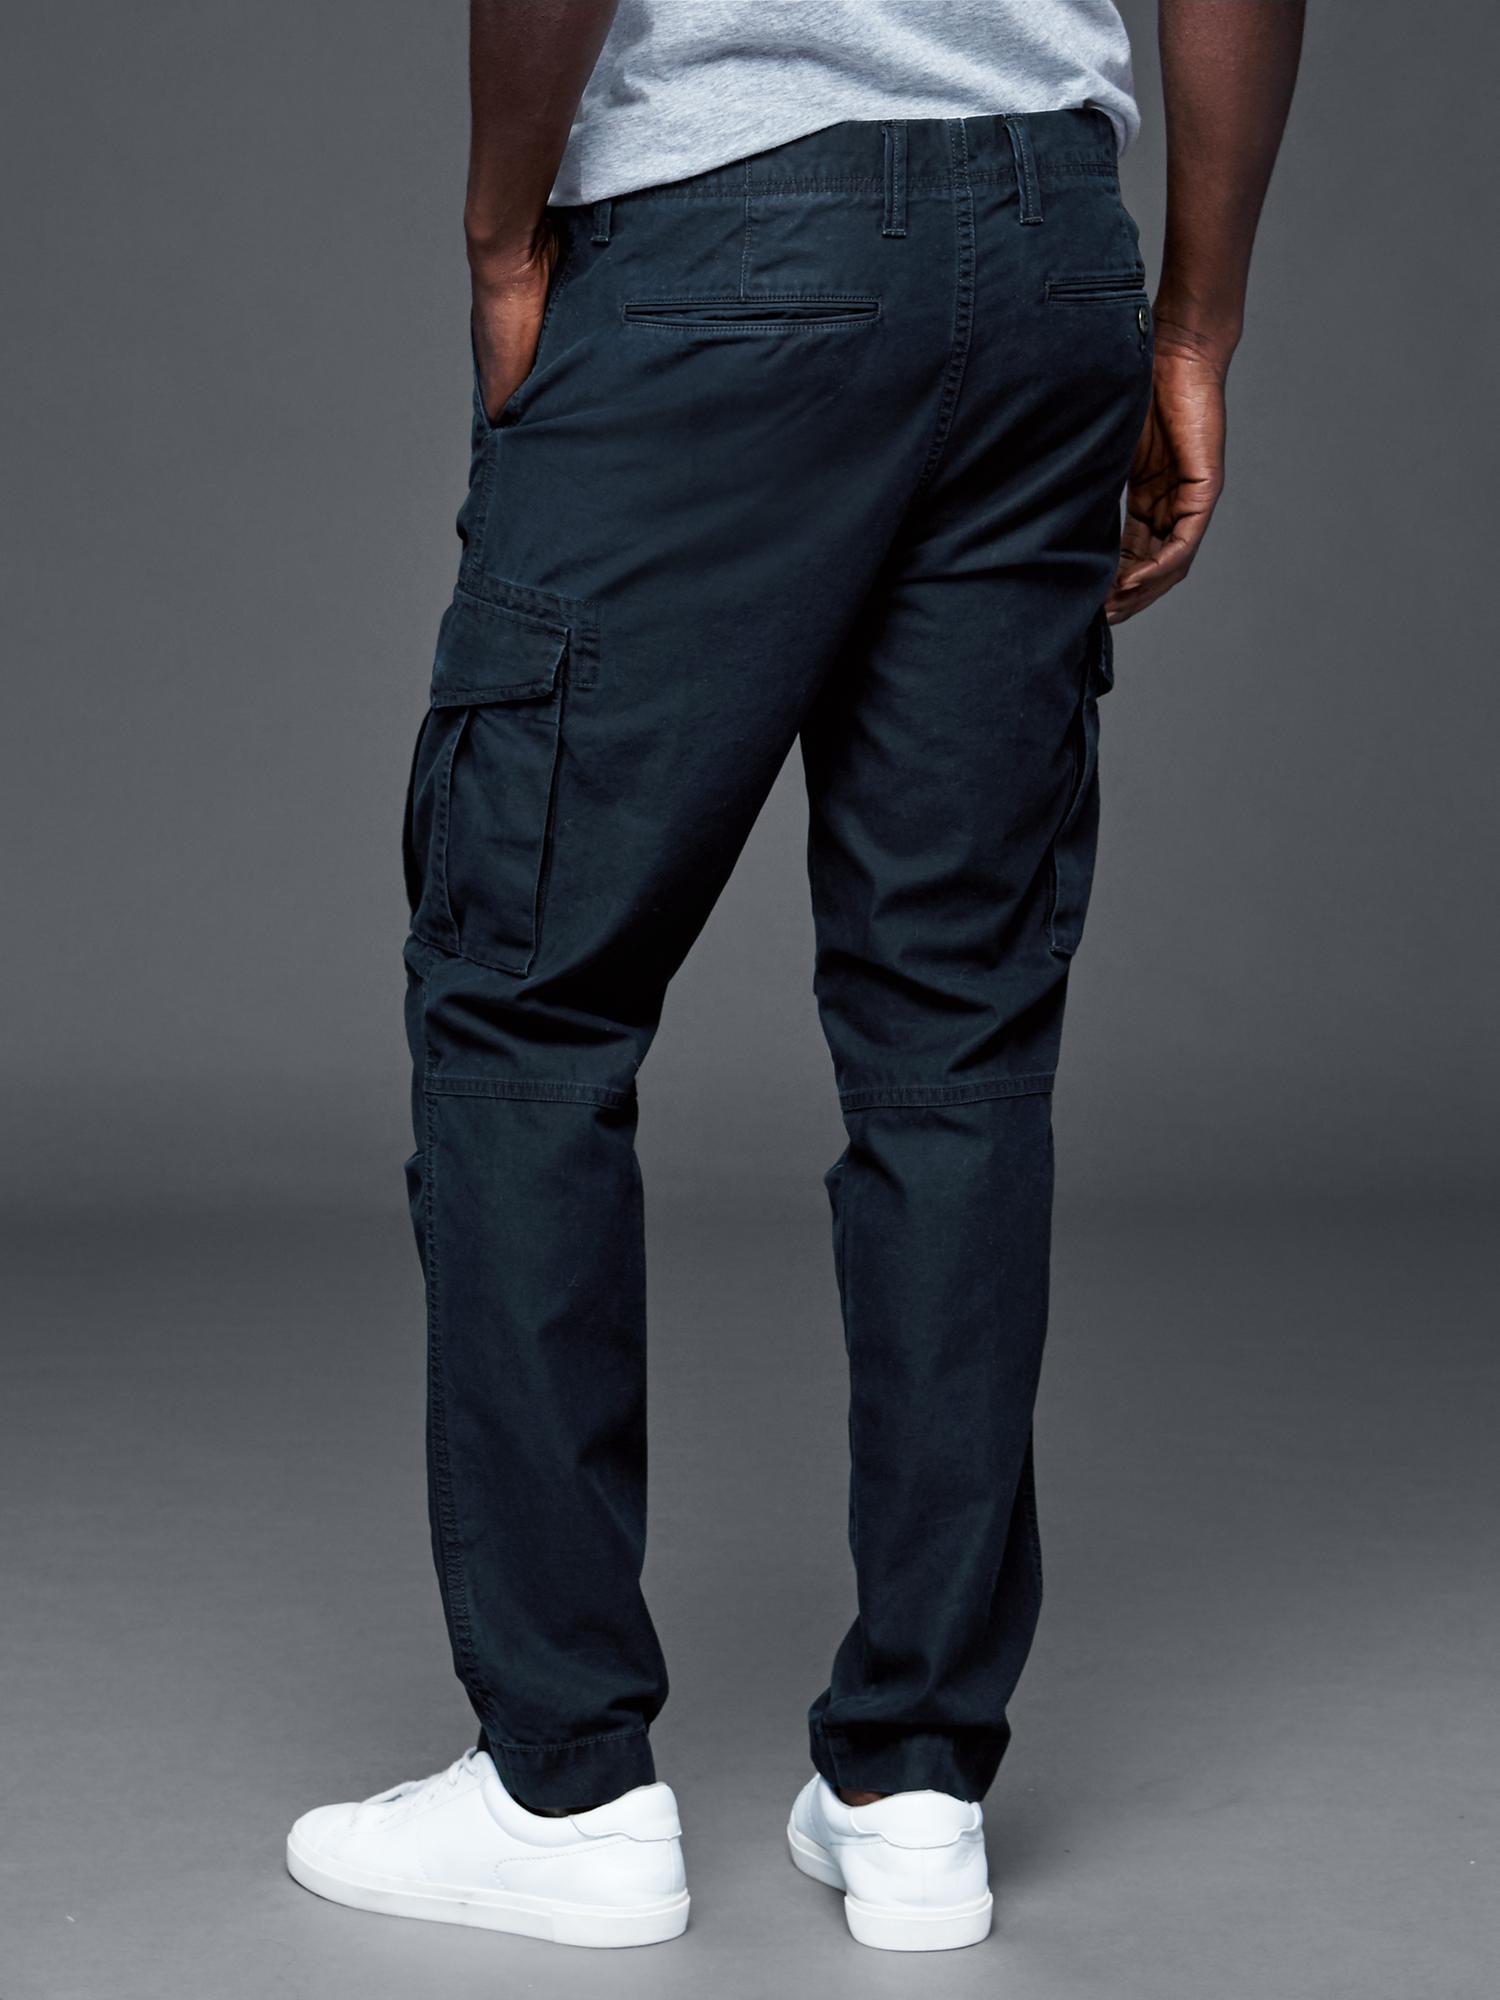 men's gap cargo pants